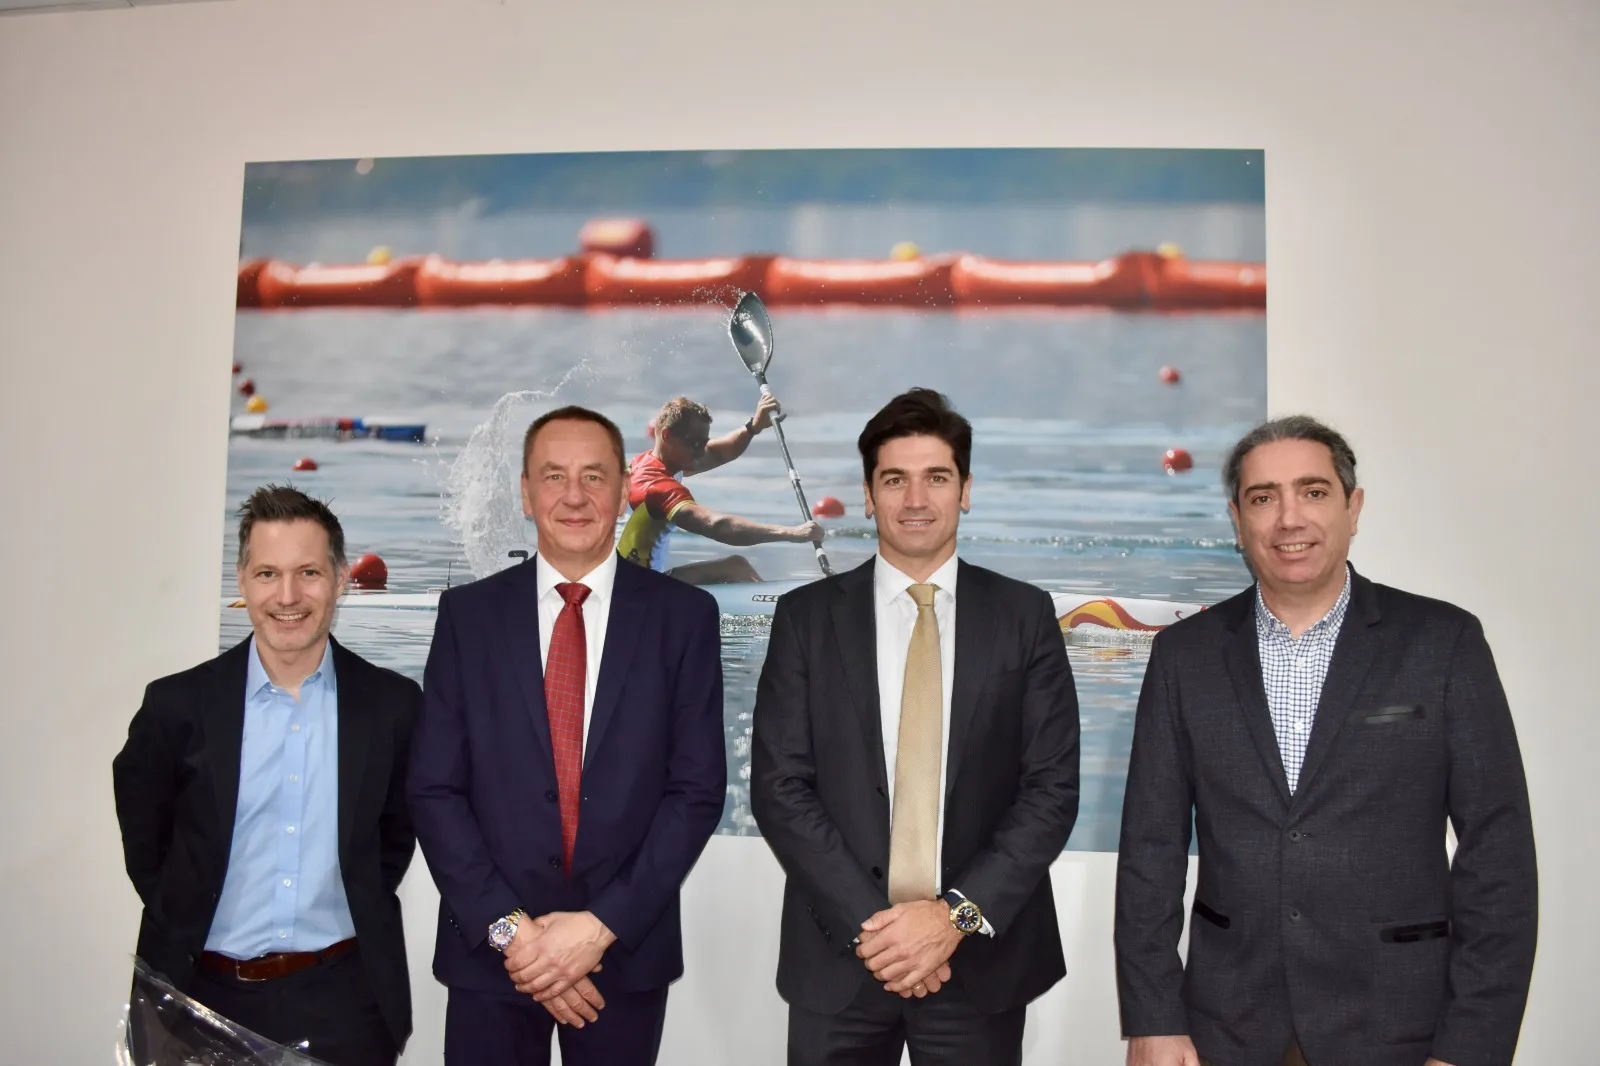 Thomas Konietzko, presidente de la ICF, visita España para apoyar la construcción de un canal olímpico